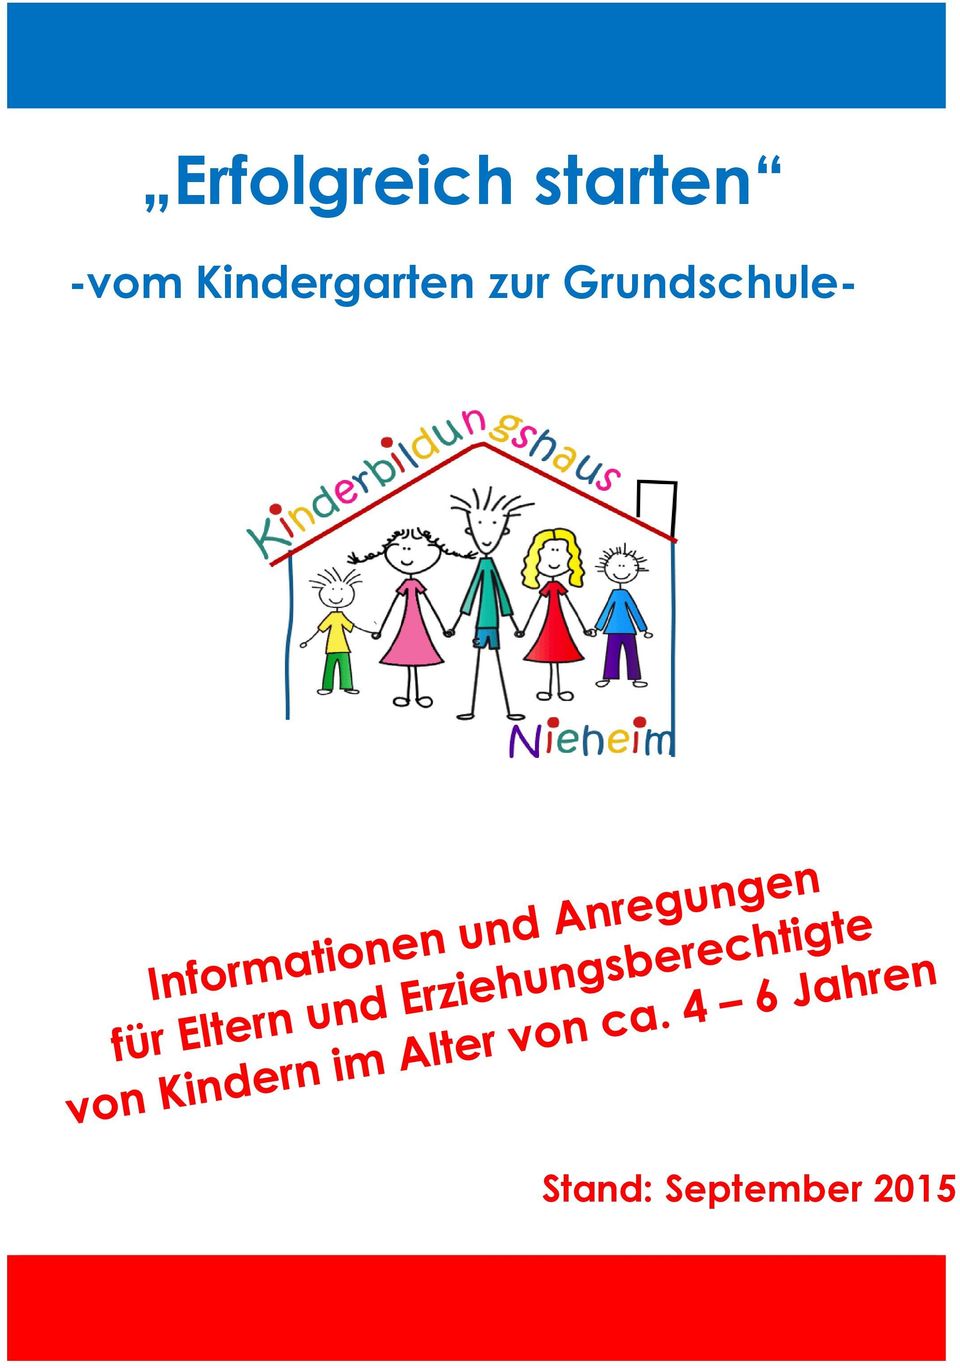 Kindergarten zur